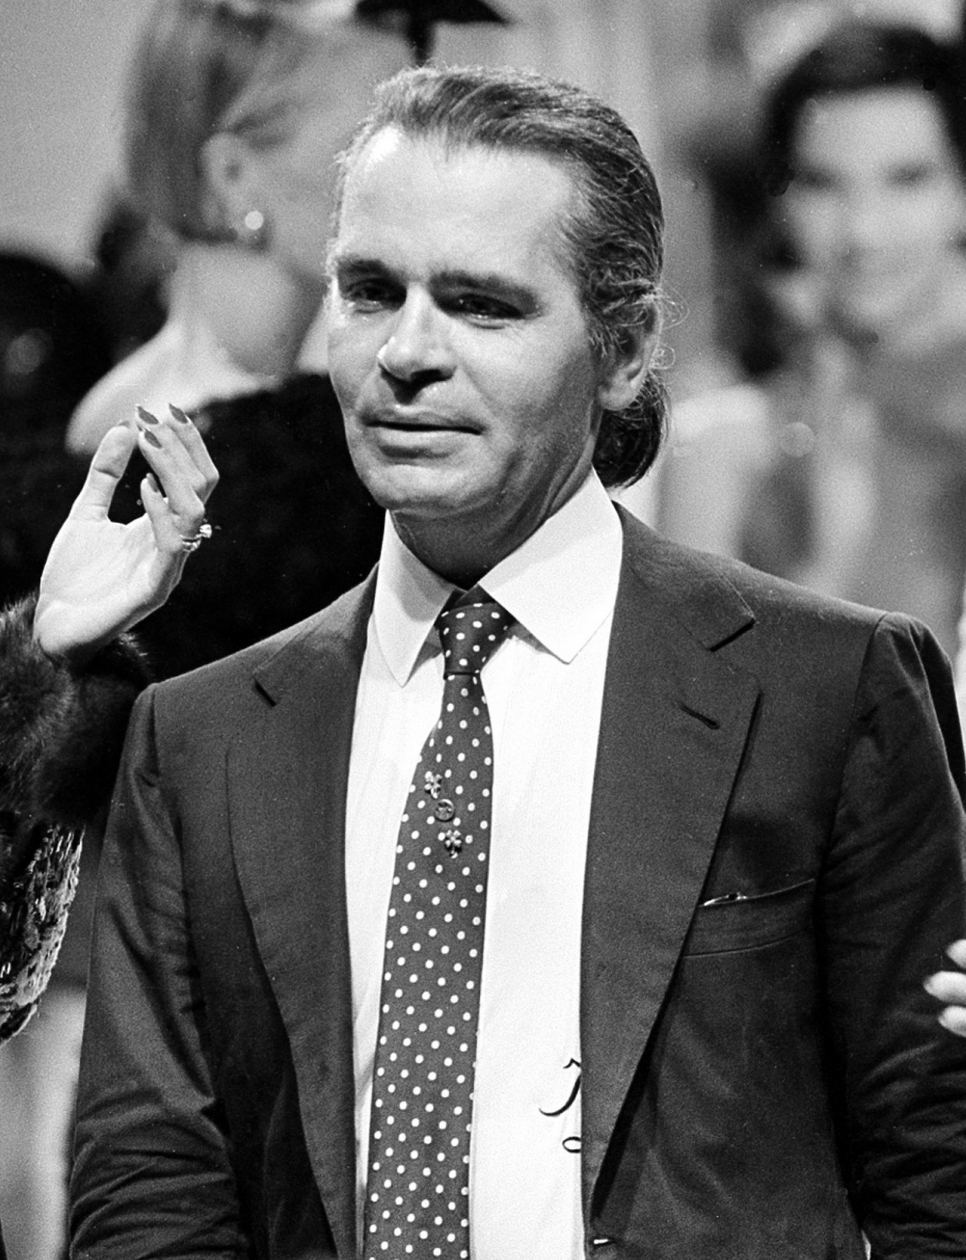 Karl Lagerfeld di tahun 1983